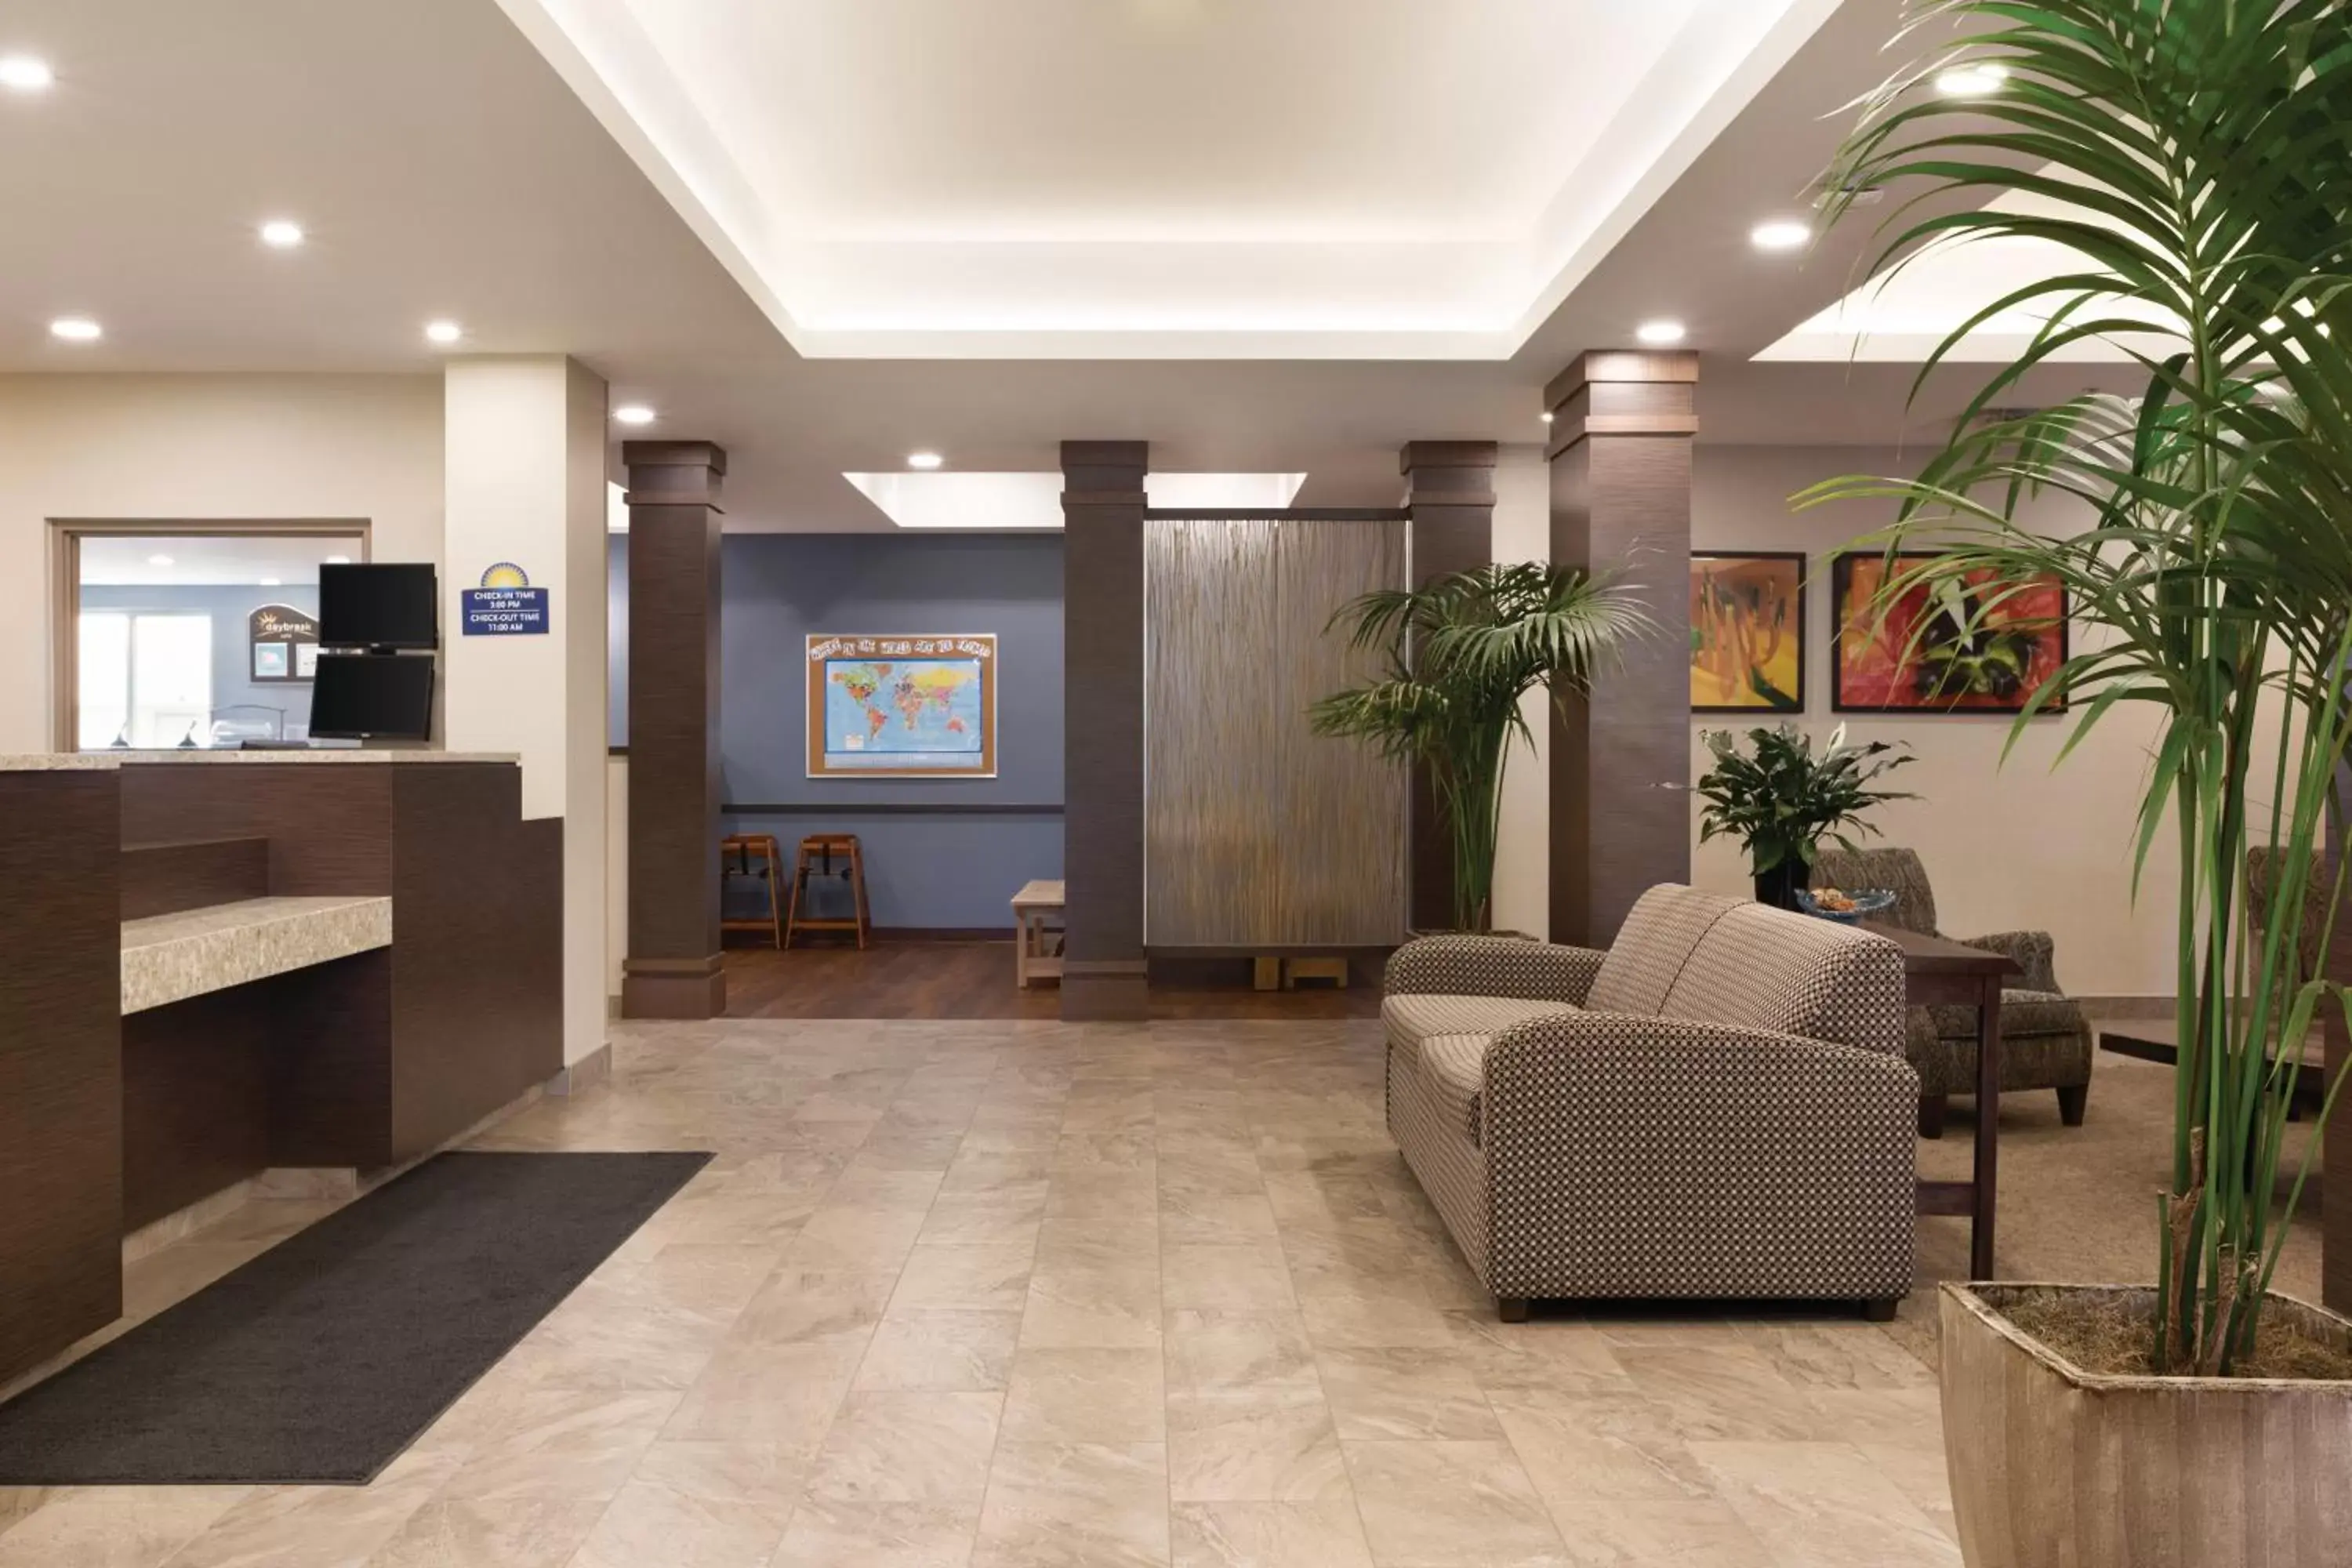 Lobby or reception, Lobby/Reception in Days Inn & Suites by Wyndham Lindsay